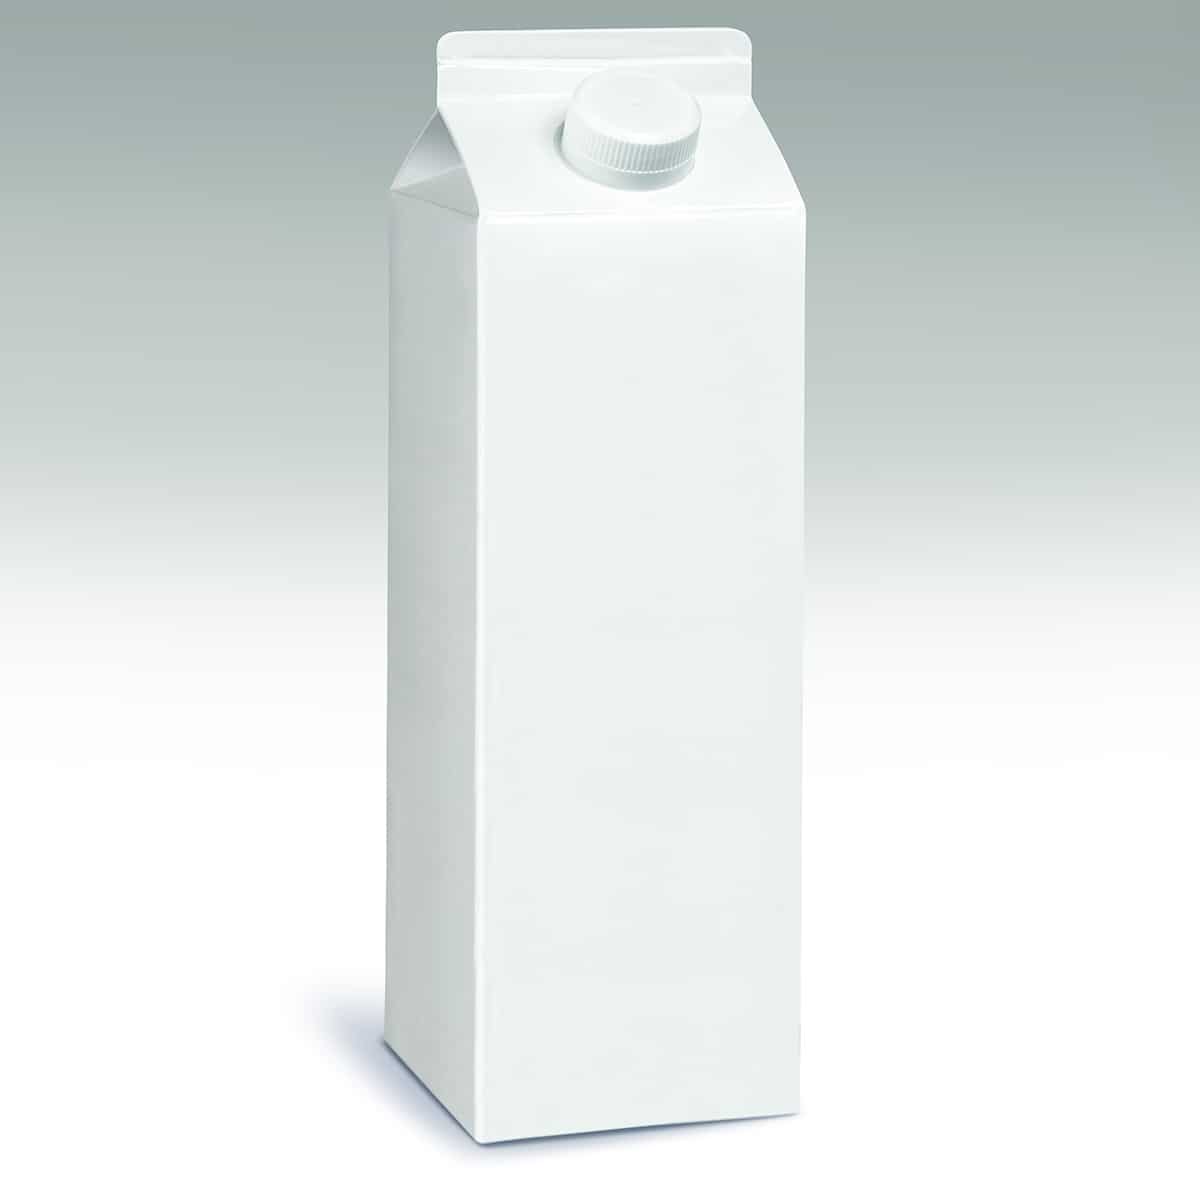 One Quart Milk Carton